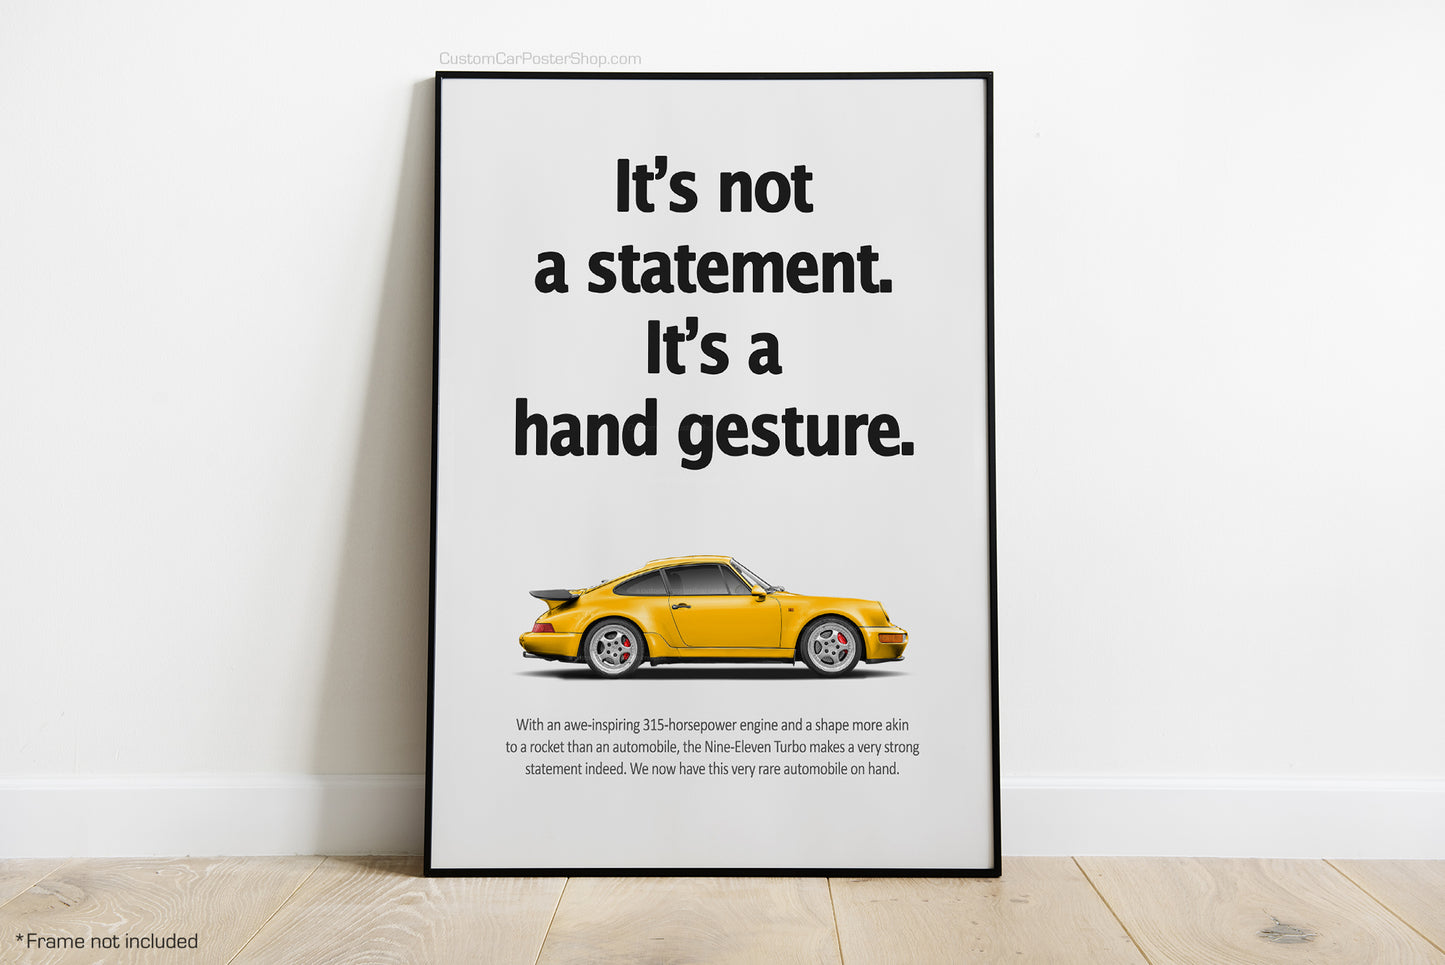 Porsche 964 Turbo Vintage Porsche Ads - Statement vs Hand Gesture